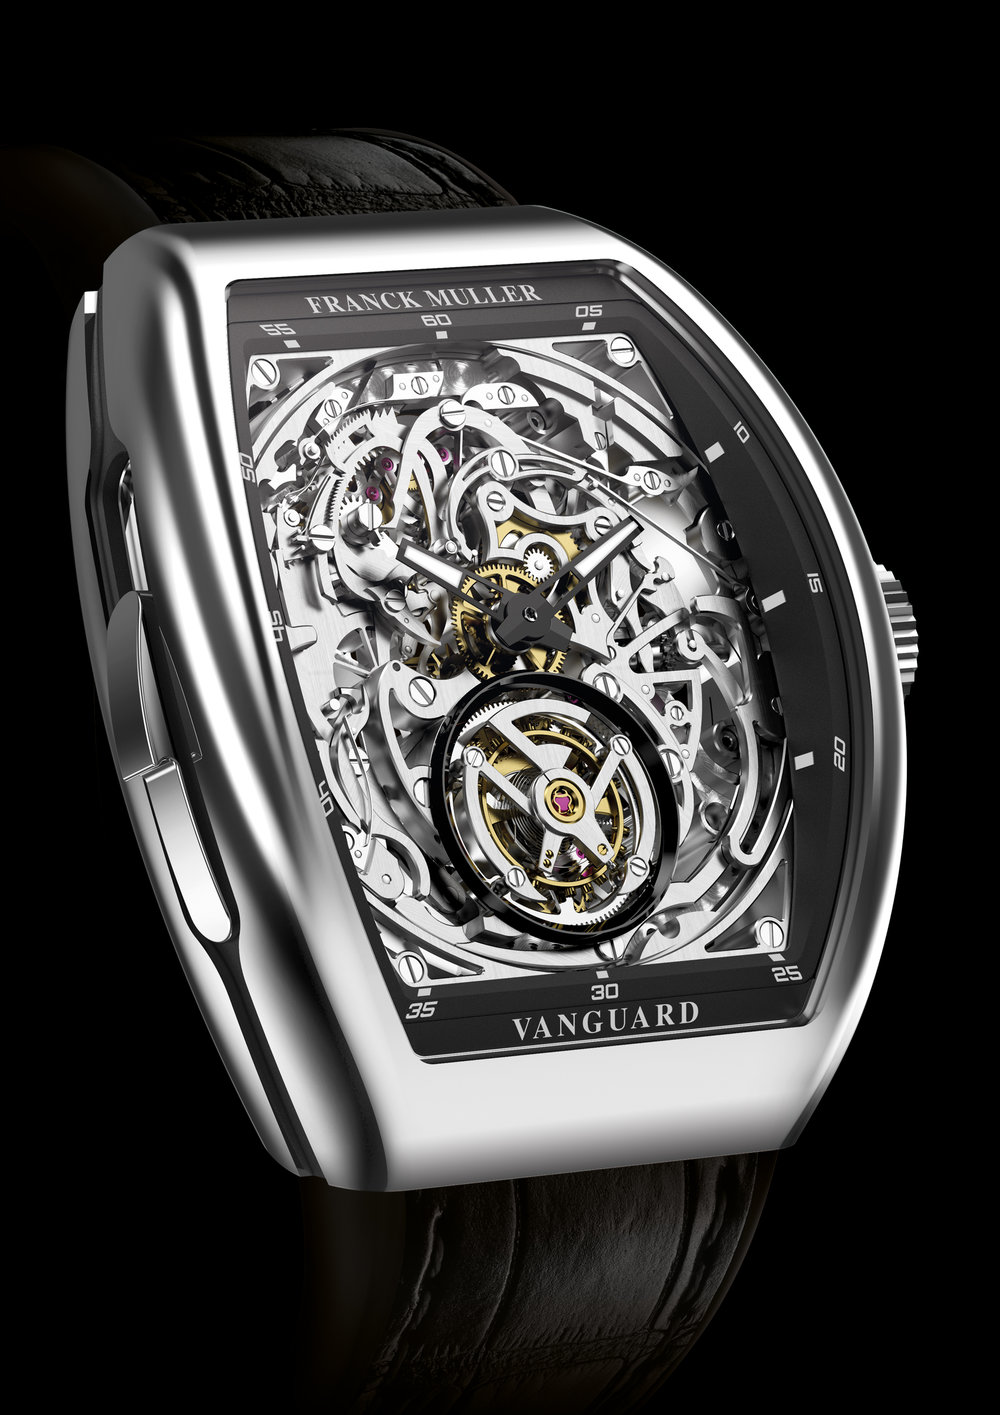 Franck Muller Cintrée Curvex 18K Rose Gold Men's Watch Preowned-8880 SC DT